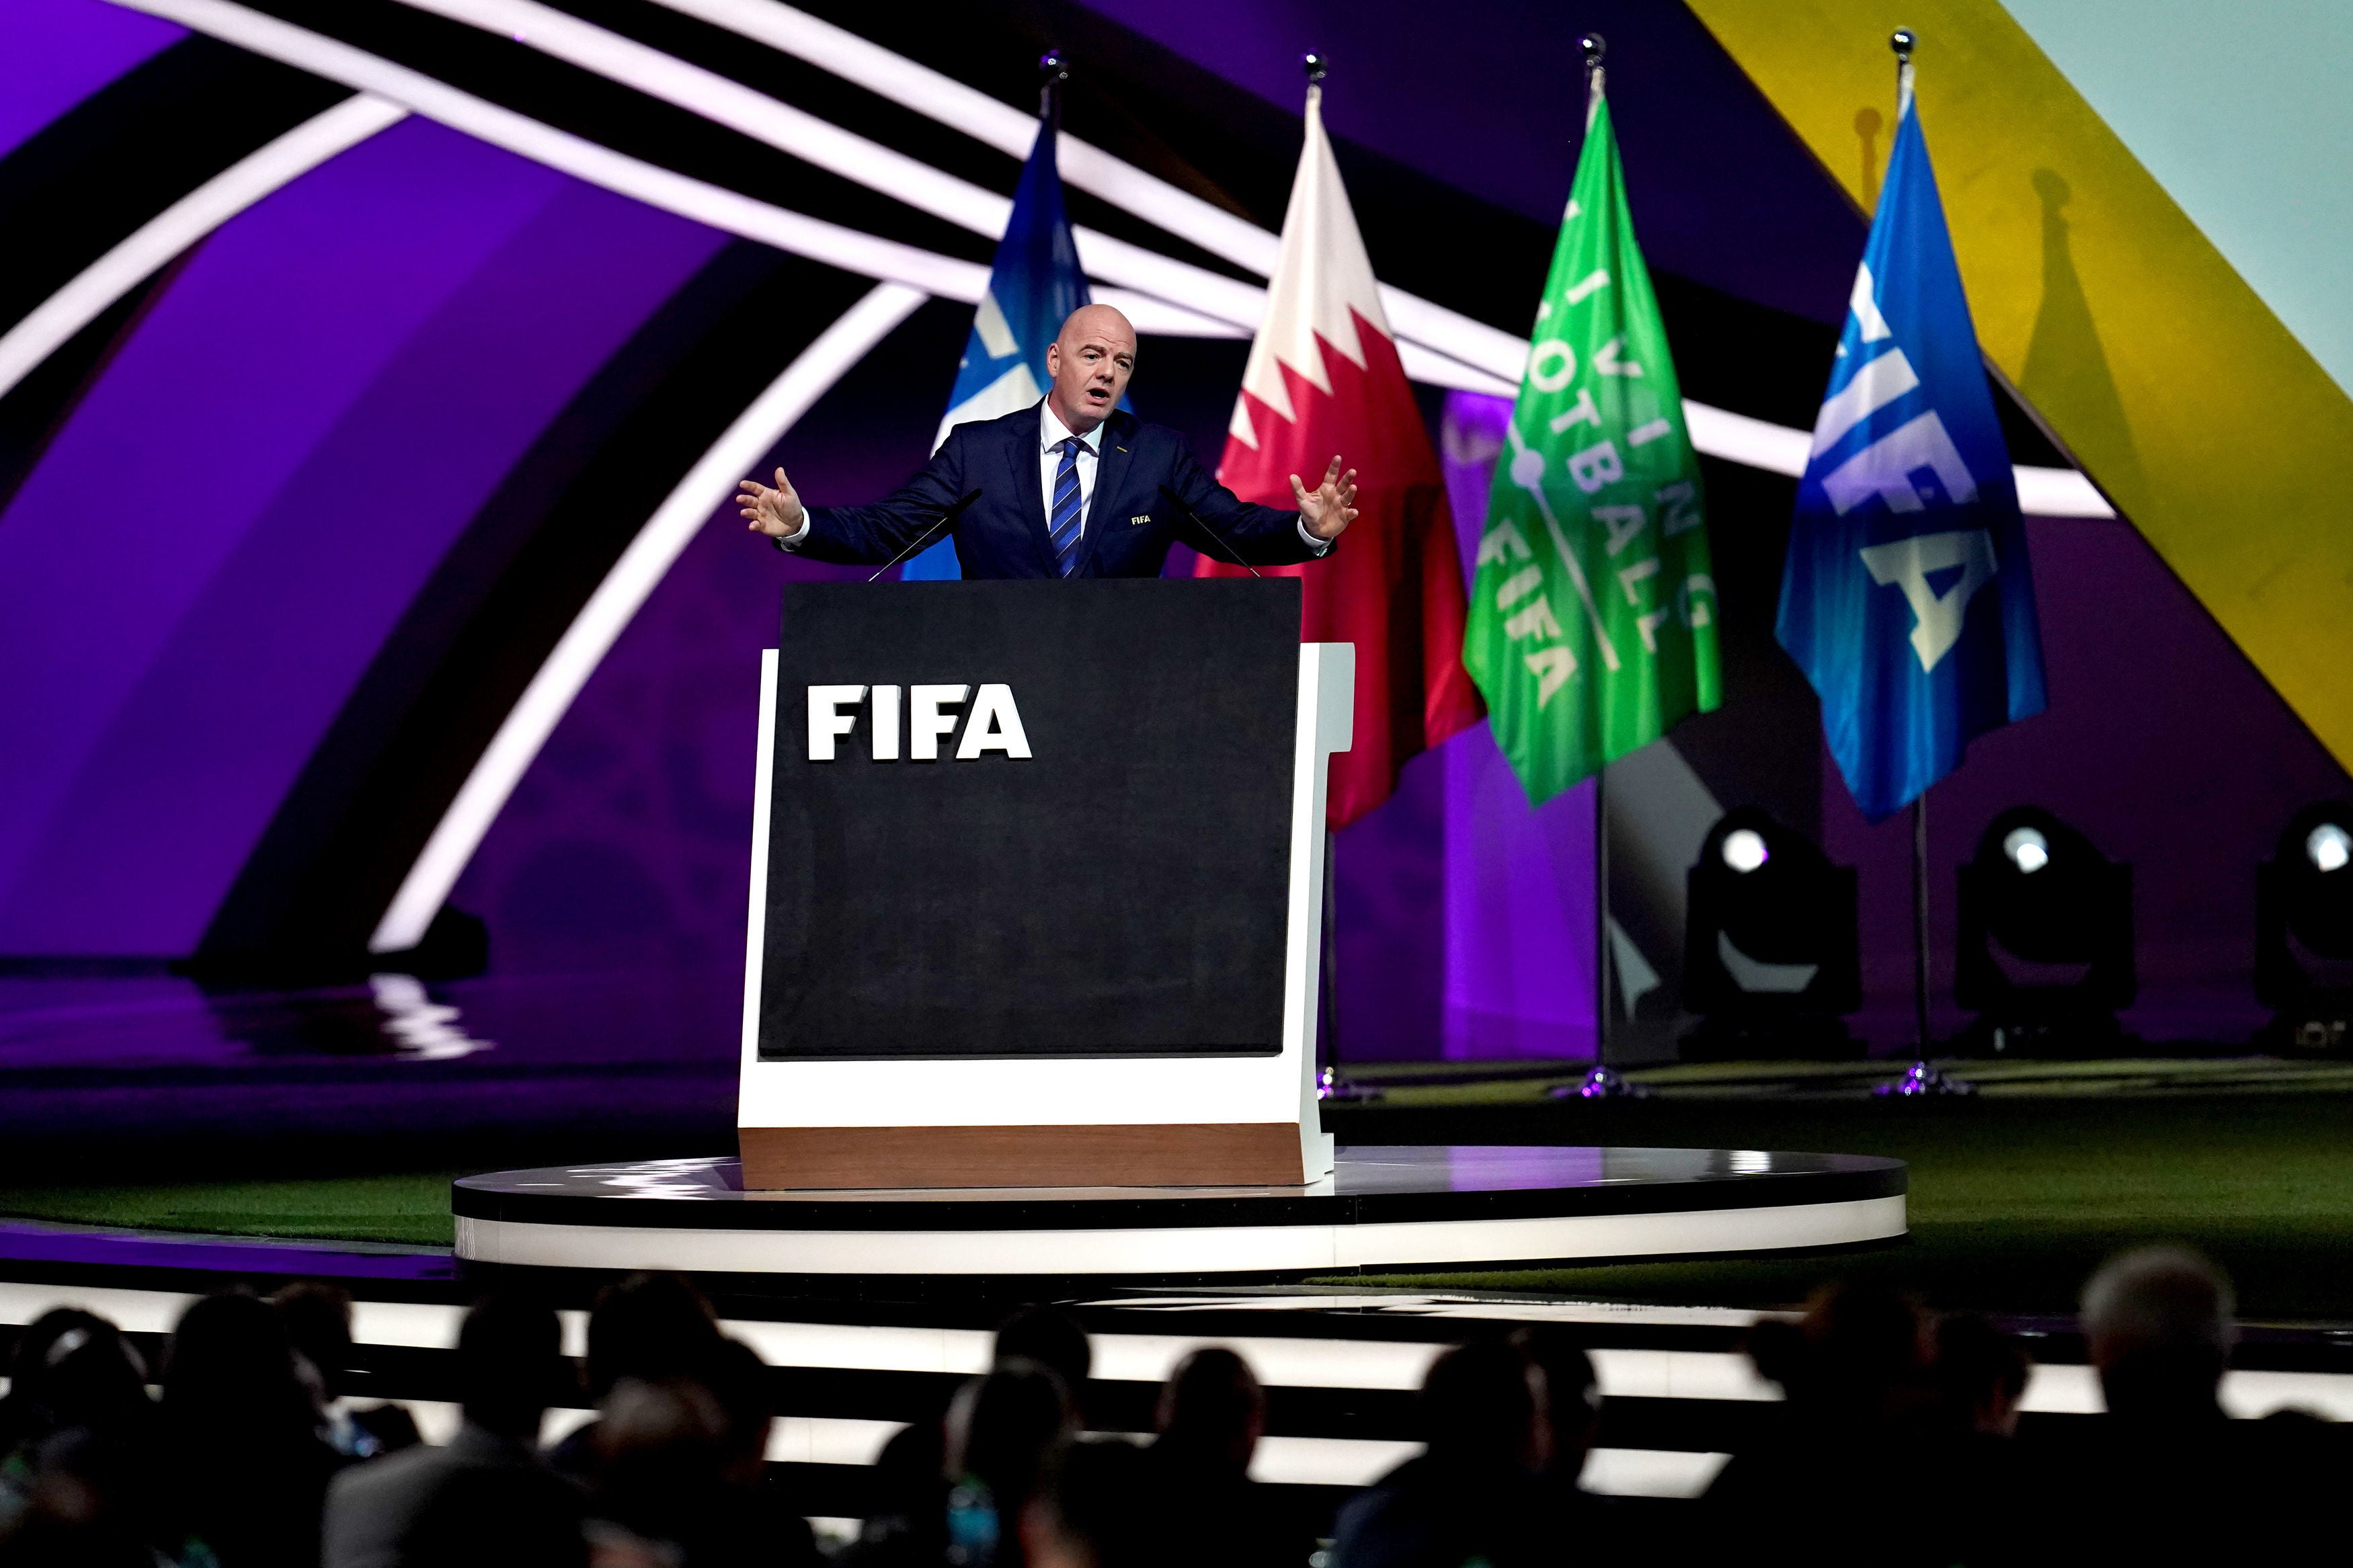 El presidente de la FIFA, Gianni Infantino, declaró que el país anfitrión ha tomado pasos importantes hacia la mejora de su historial de derechos humanos